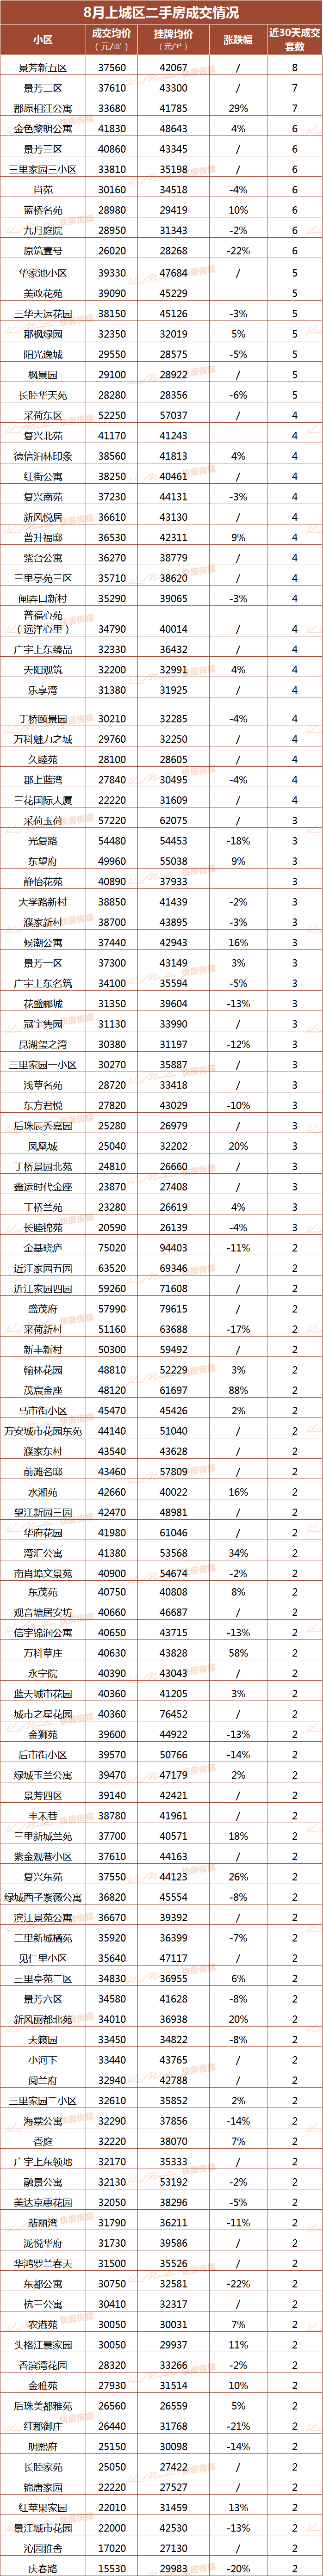 杭州小区房价排行_国家统计局周末发布房价数据,杭州的排名亮了